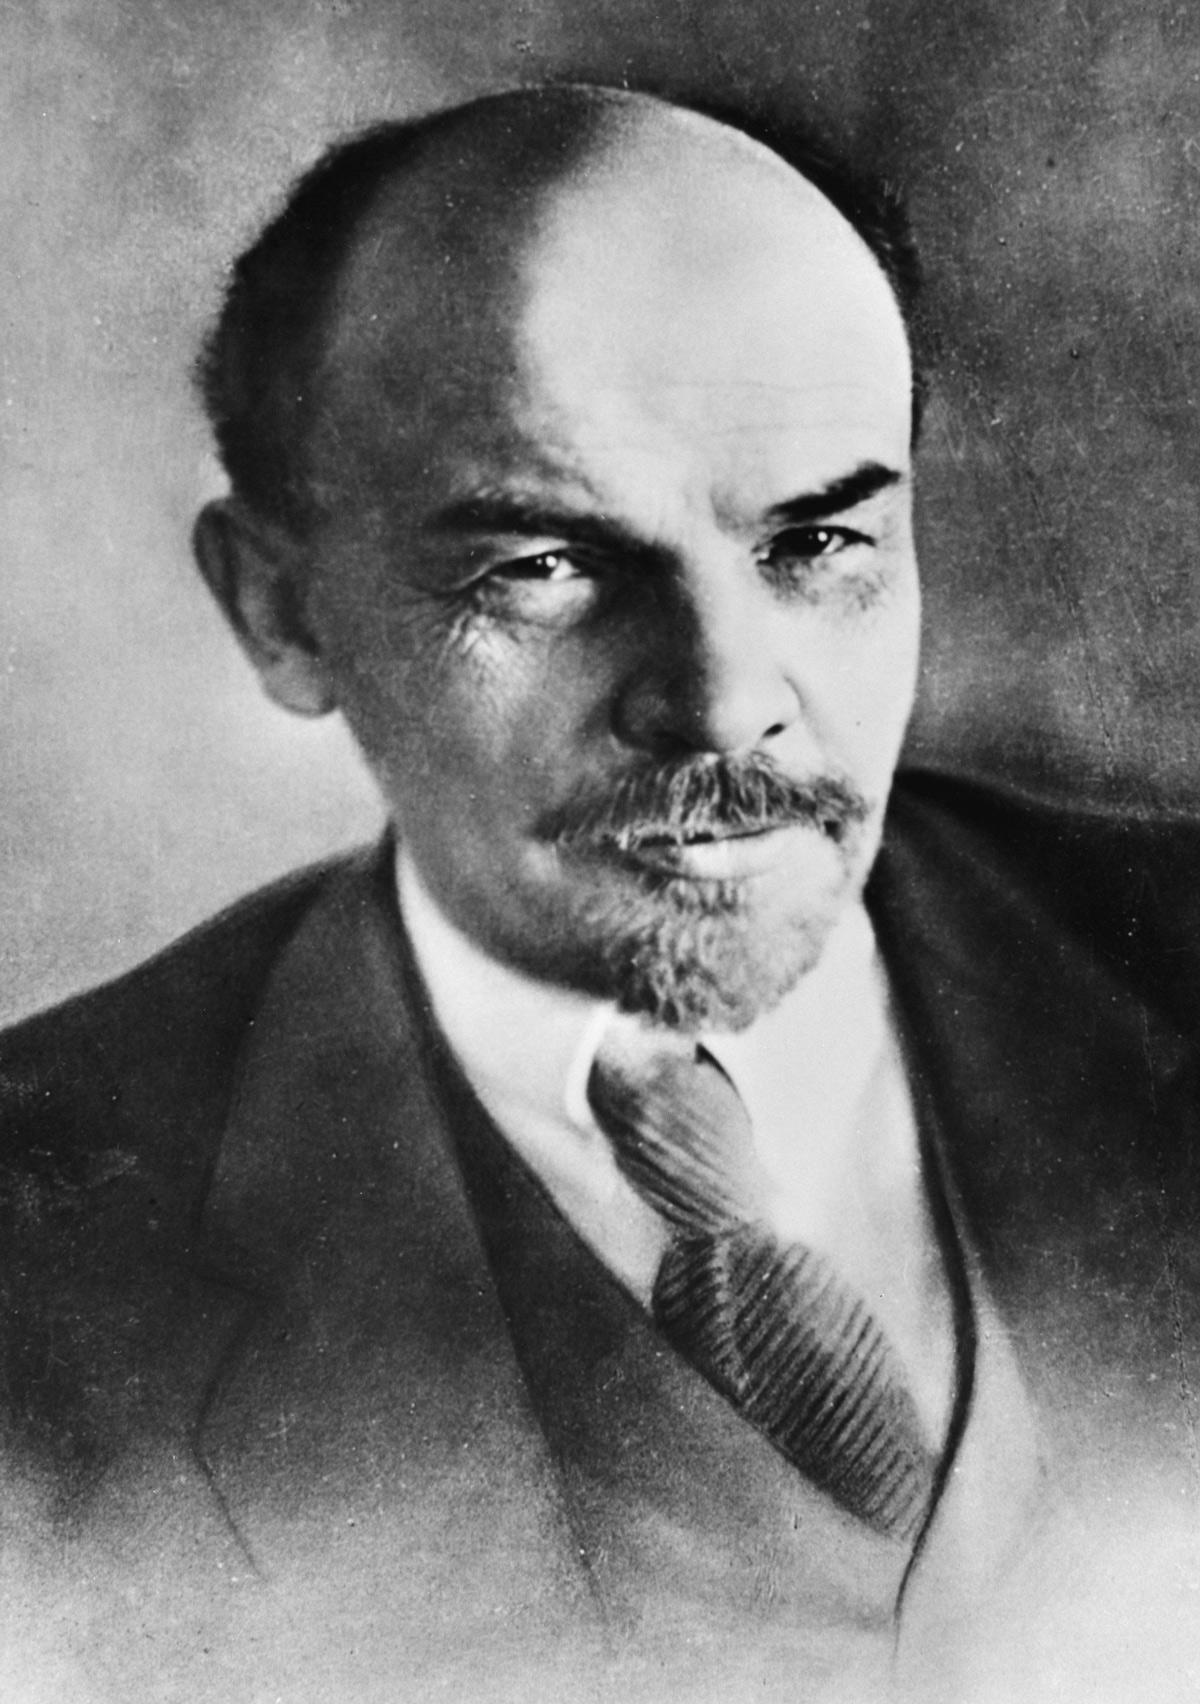 Lenin kop Bestanddeelnr 926 6260 cropped - Ehrung, aber richtig - Bert Brecht, Erinnerungen an Lenin, Lenin, Todestag - Kultur